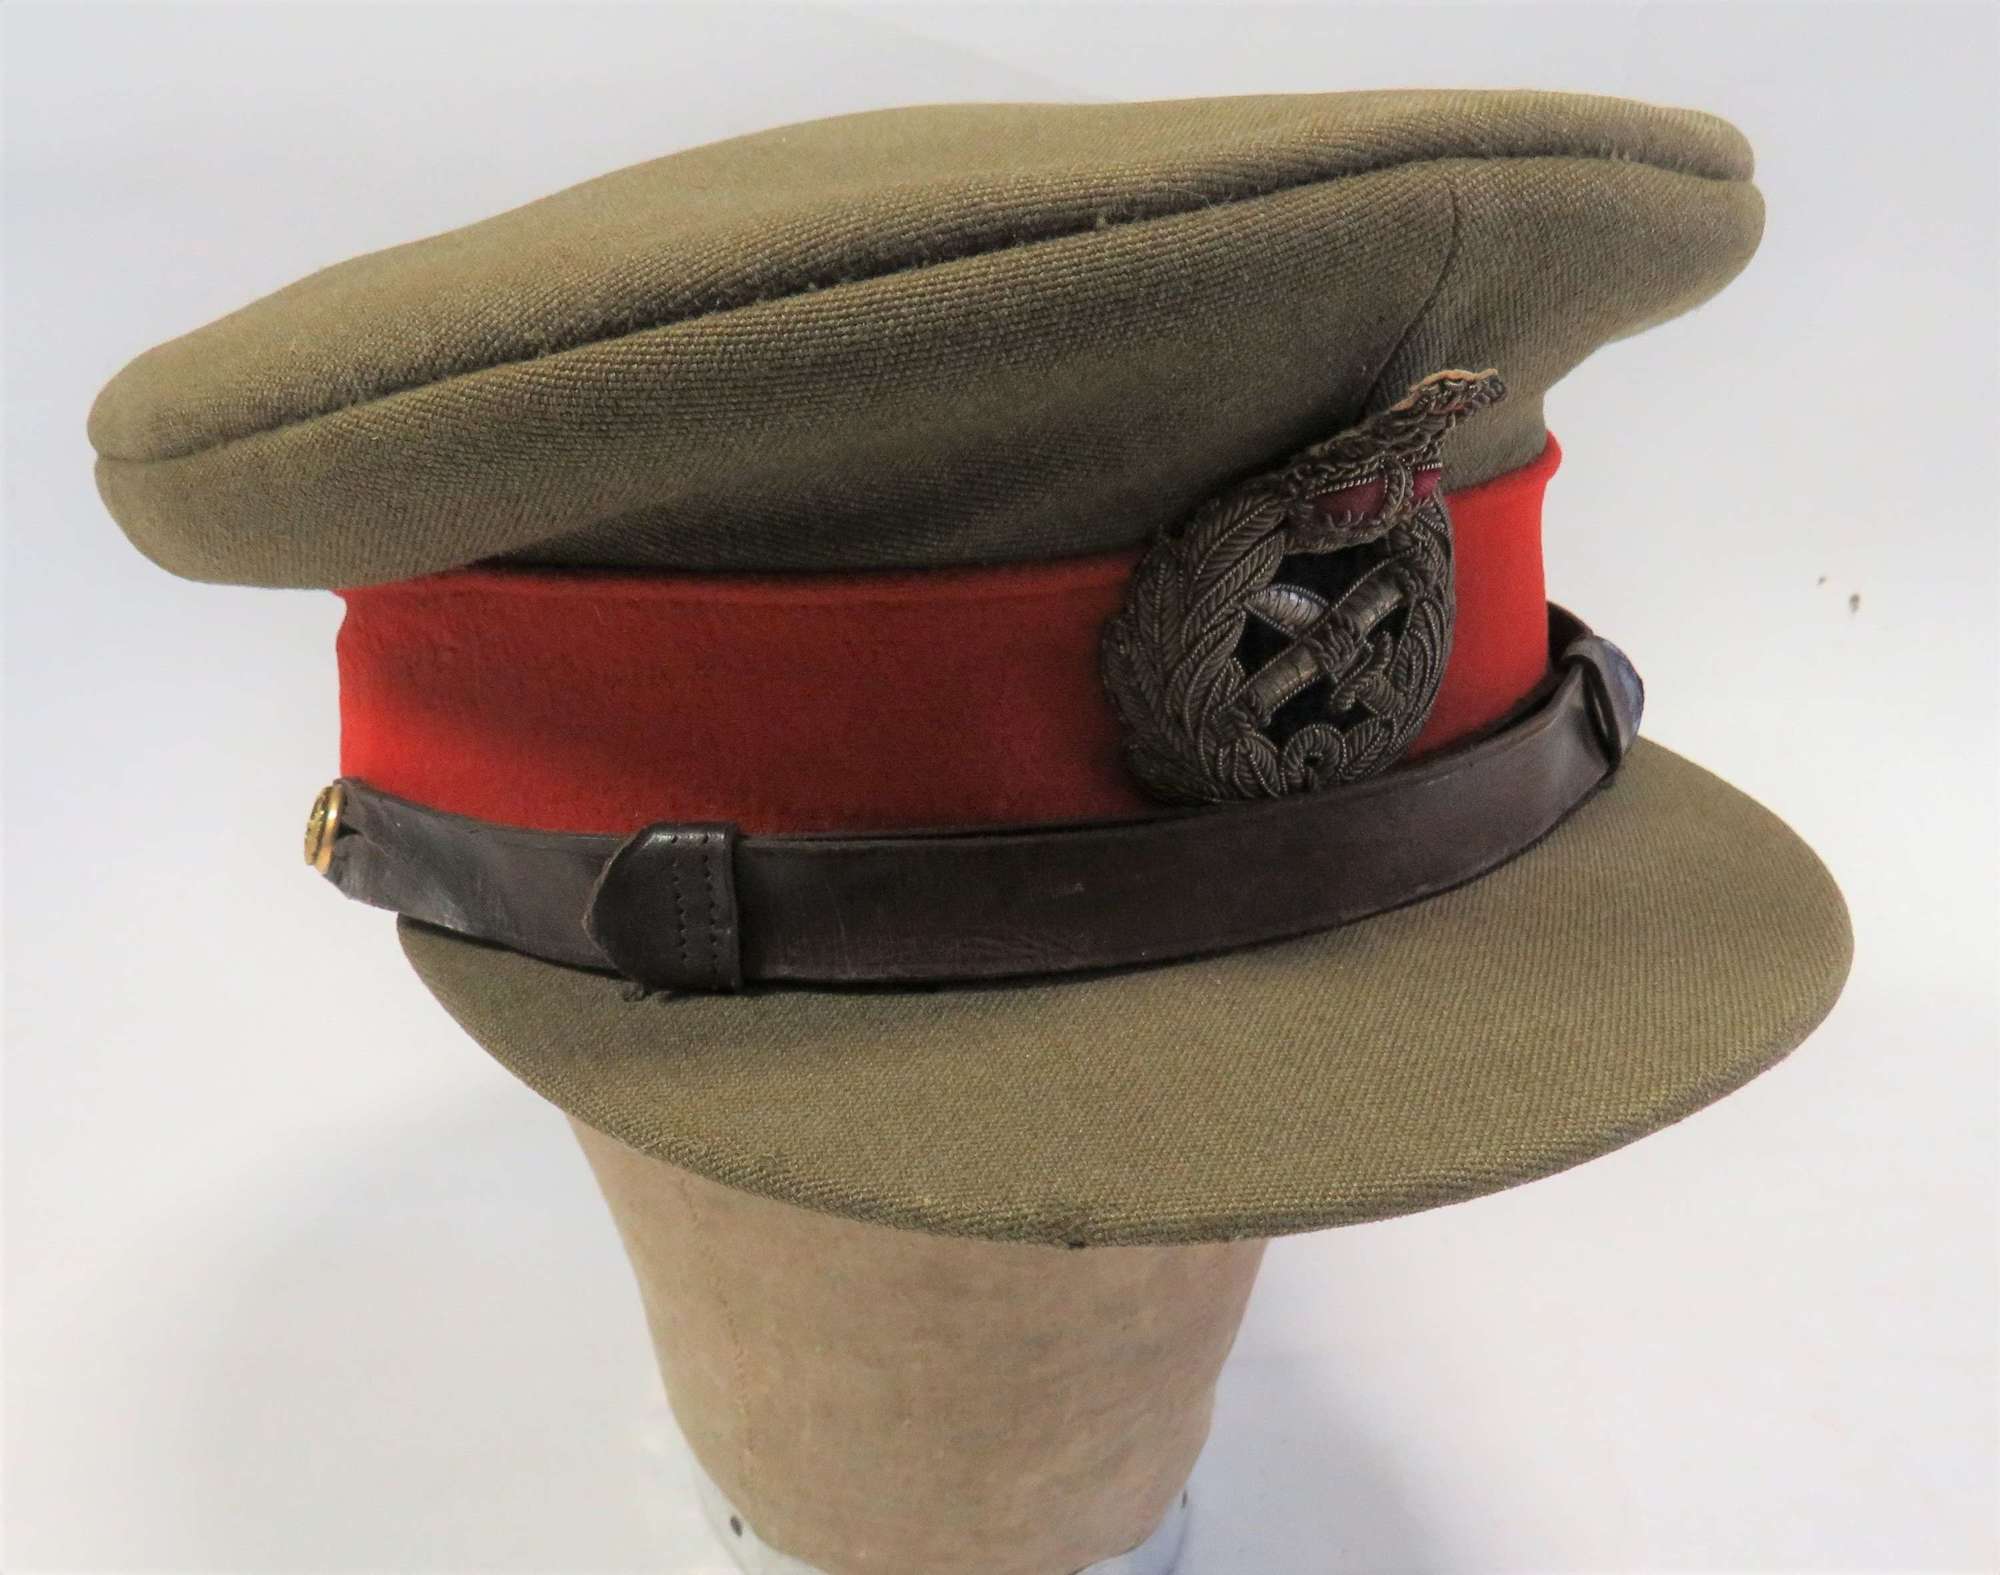 Post 1952 General's Service Dress Cap